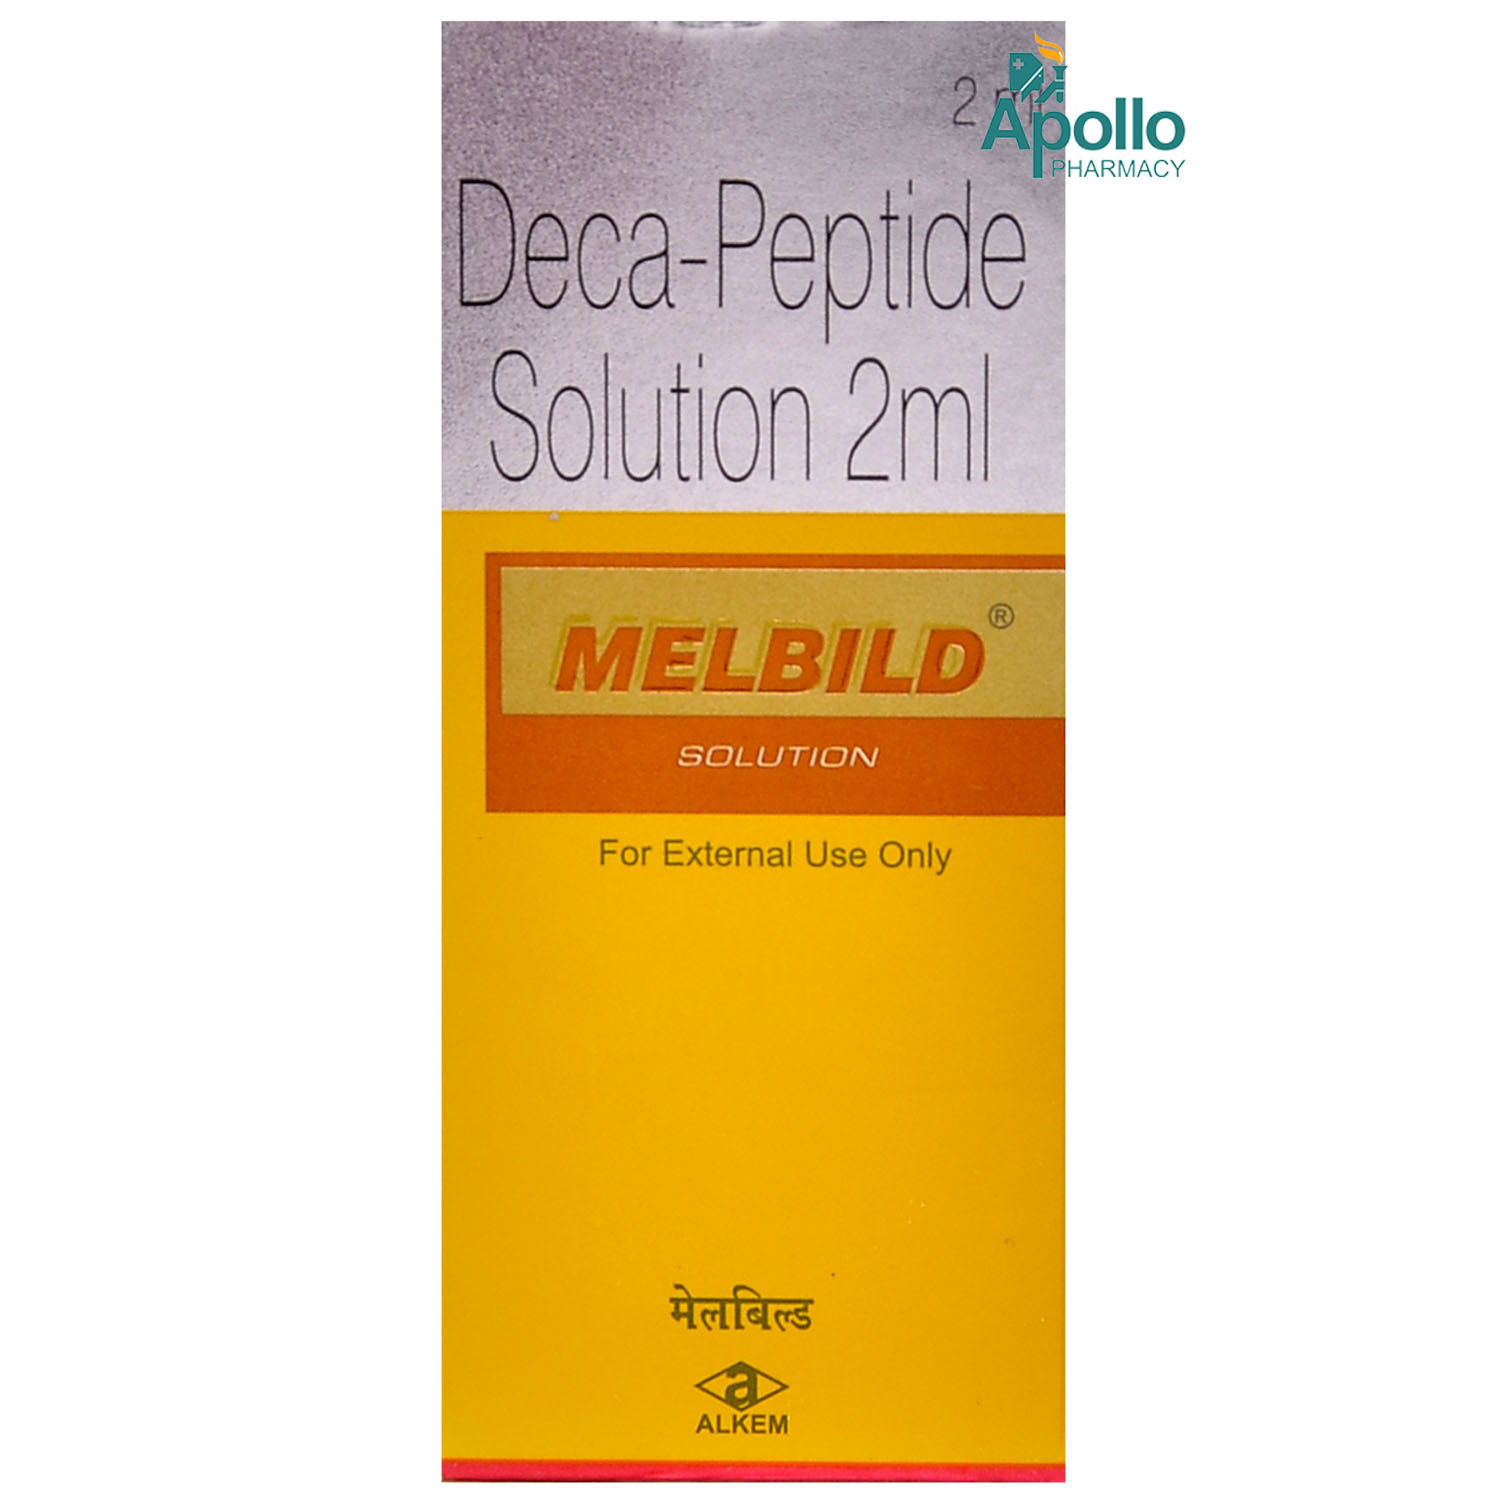 Melbild Solution 2 ml, Pack of 1 SOLUTION